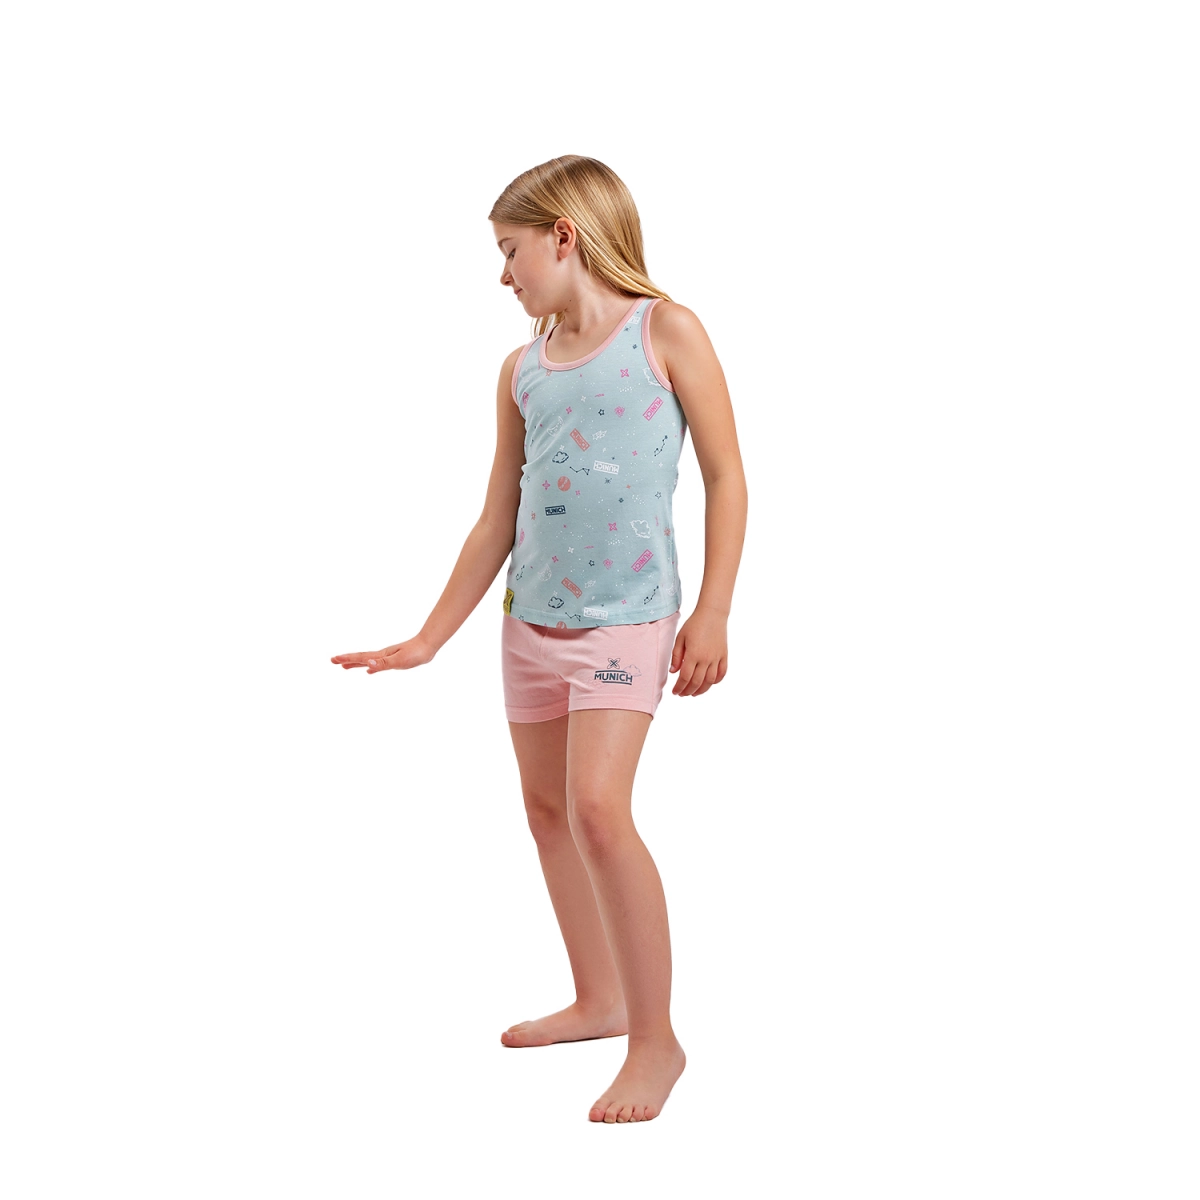 Pijama de tirantes y cuello redondo Munich DH1200 niña Talla: 4 AÑOS Color: Multicolor DH1200.4 AÑOS